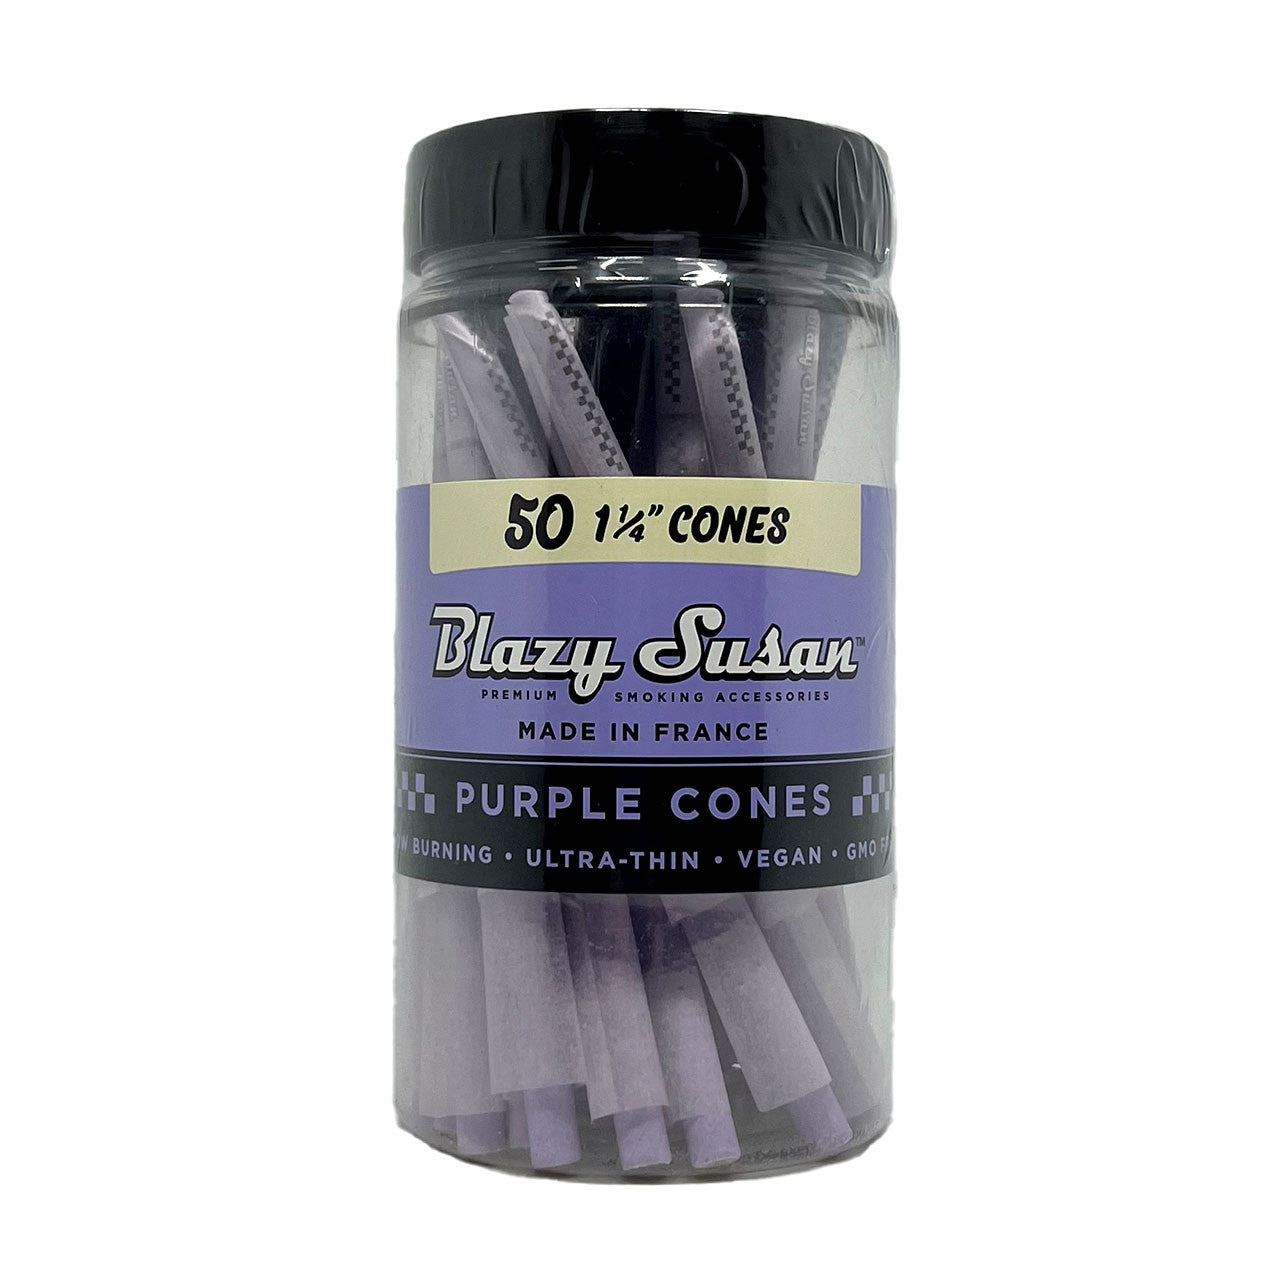 Blazy Susan Purple 1¼ Pre-Roll Cones - Jar of 50